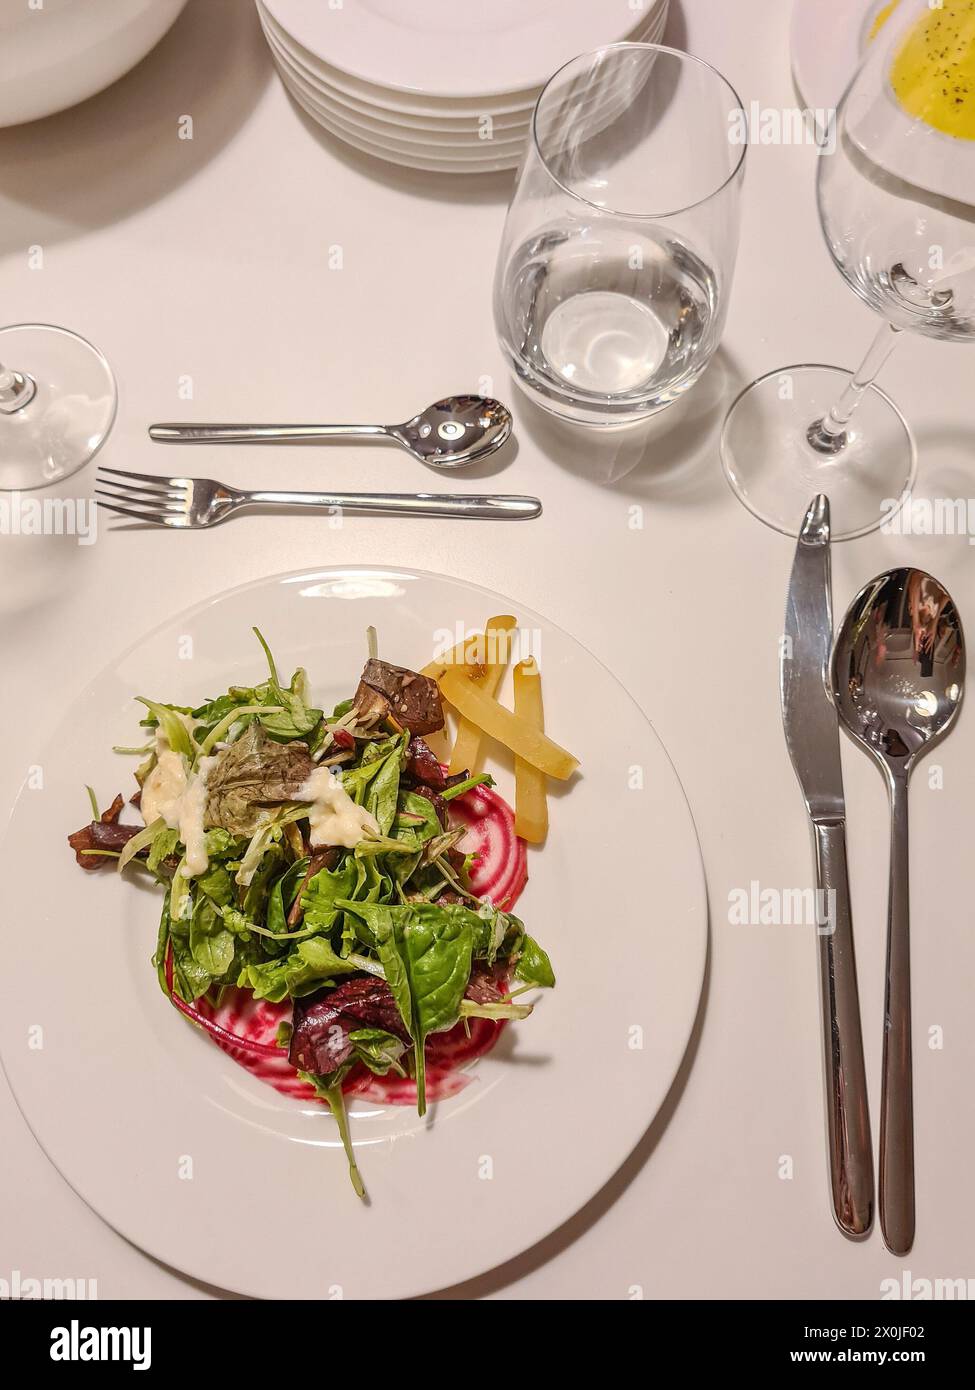 Vue de l'assiette d'apéritif avec salade à une table avec couverts Banque D'Images